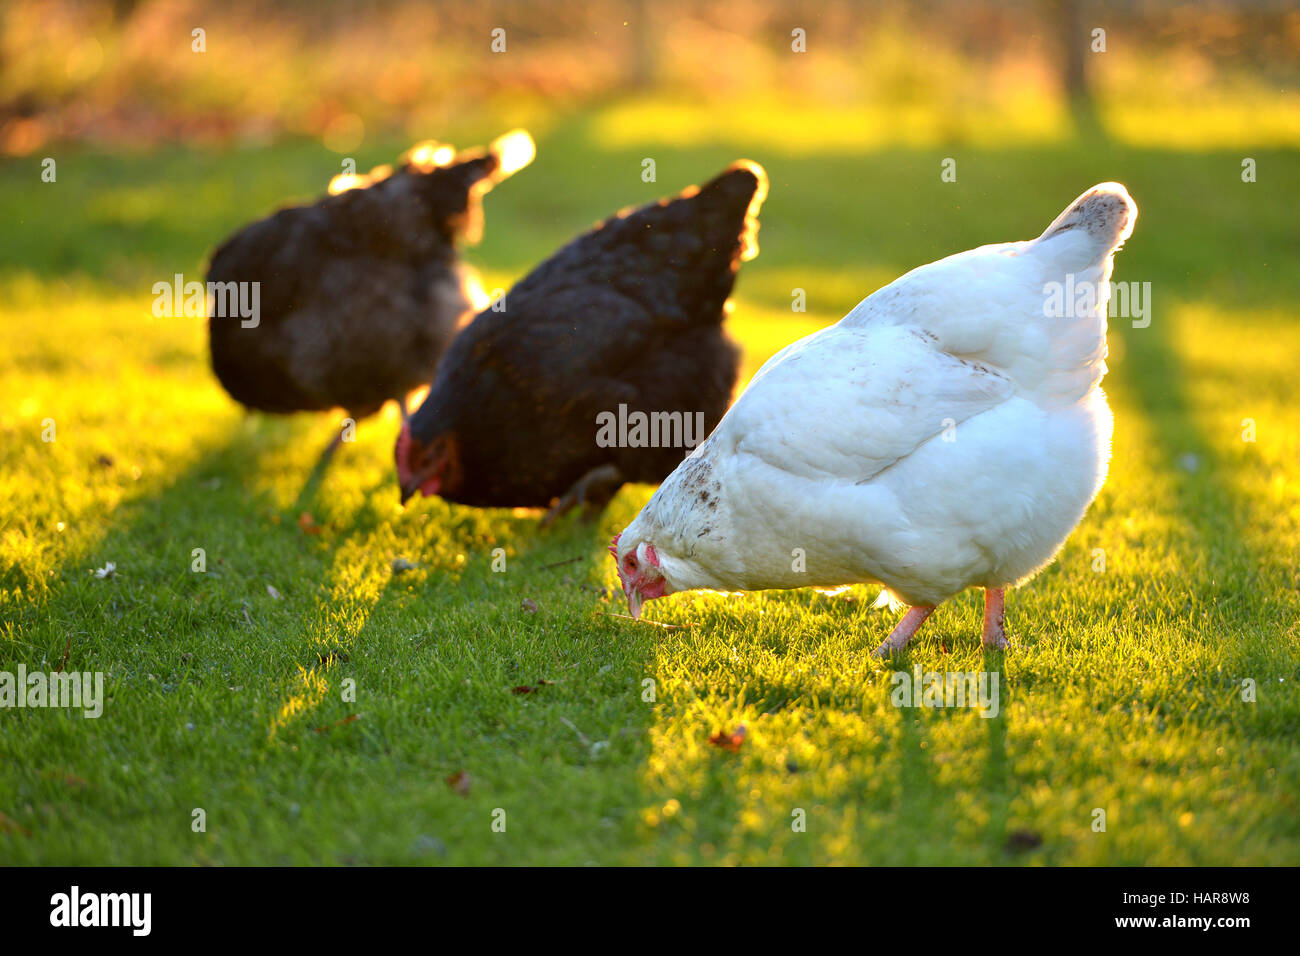 Polli in un giardino sul retro con la luce del sole dorato. Foto Stock